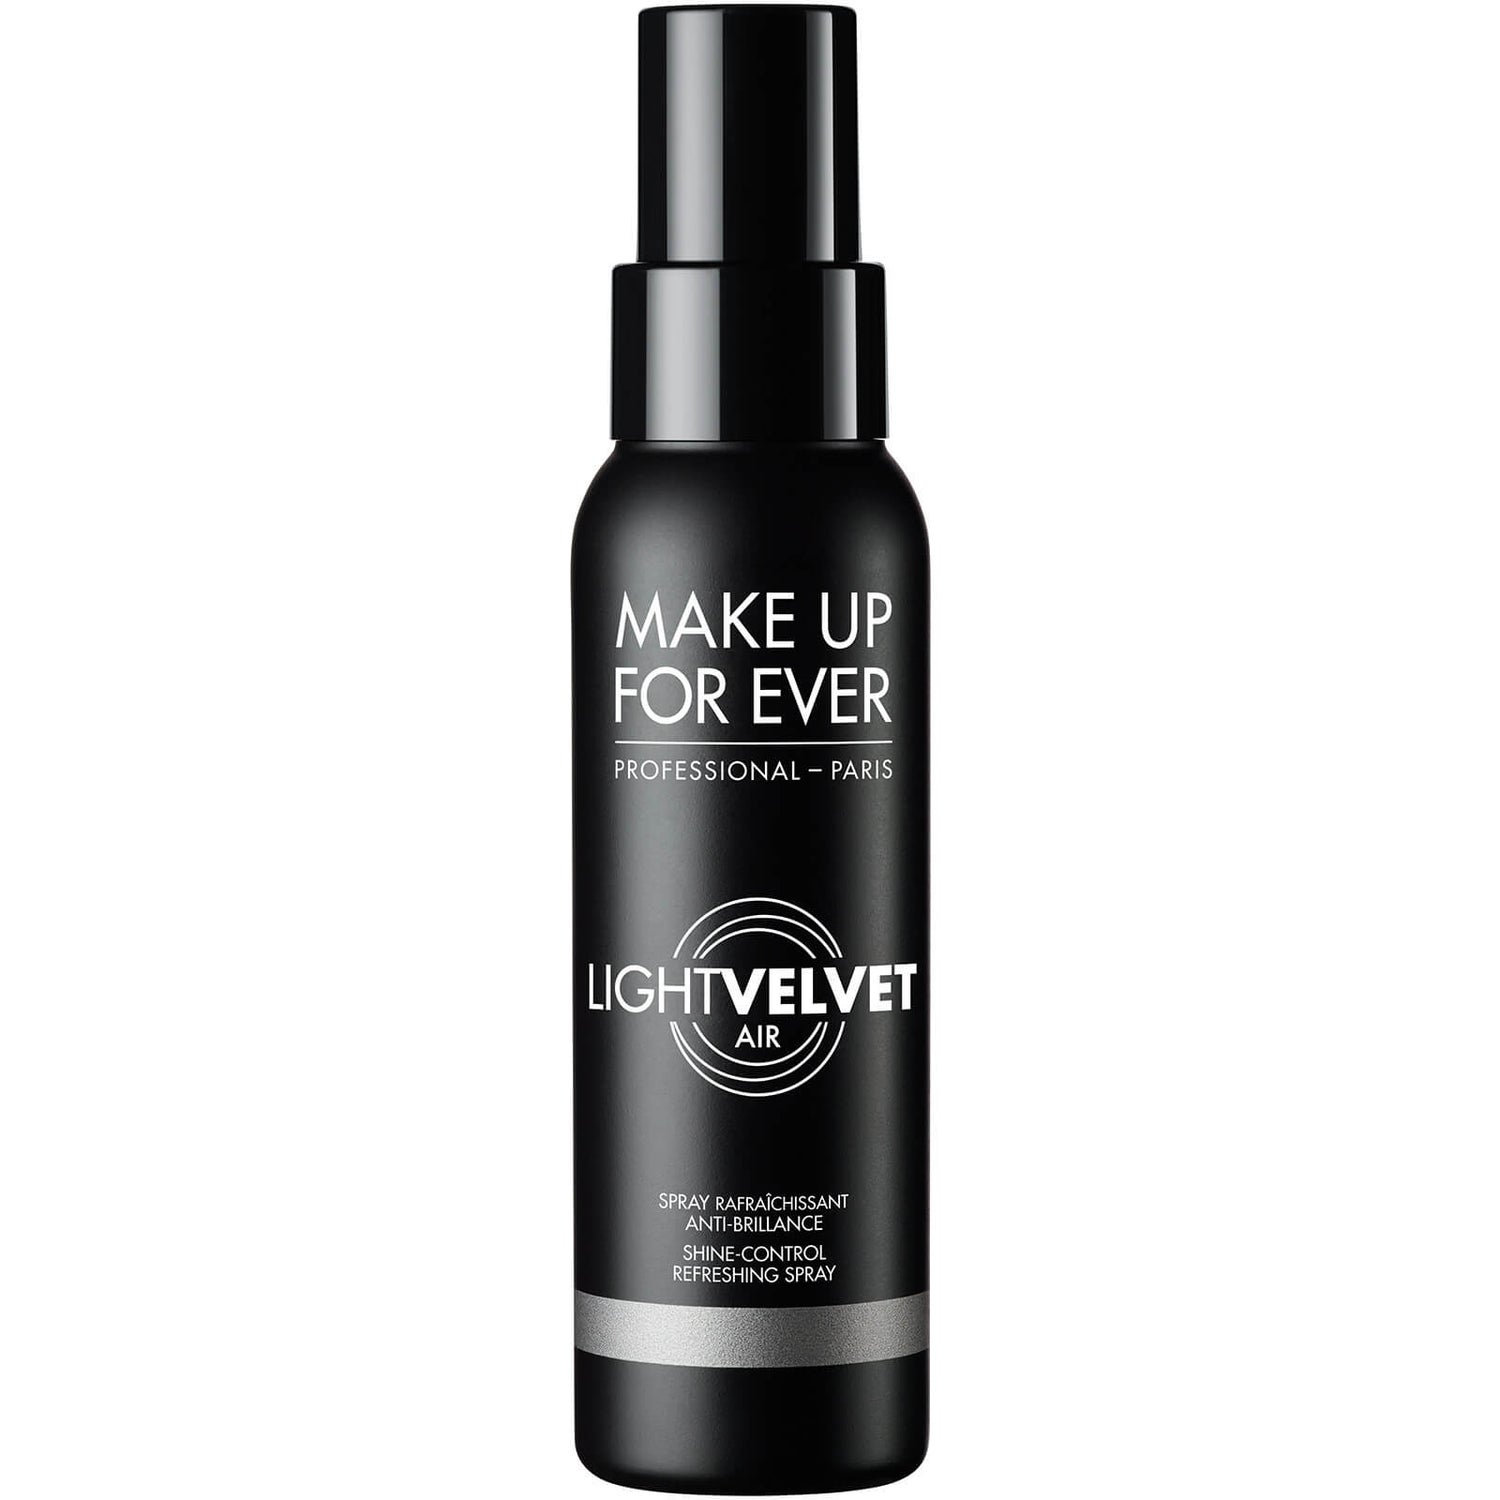 MAKE UP FOR EVER light Velvet Air Shine-Control Refreshing Spray 100ml -